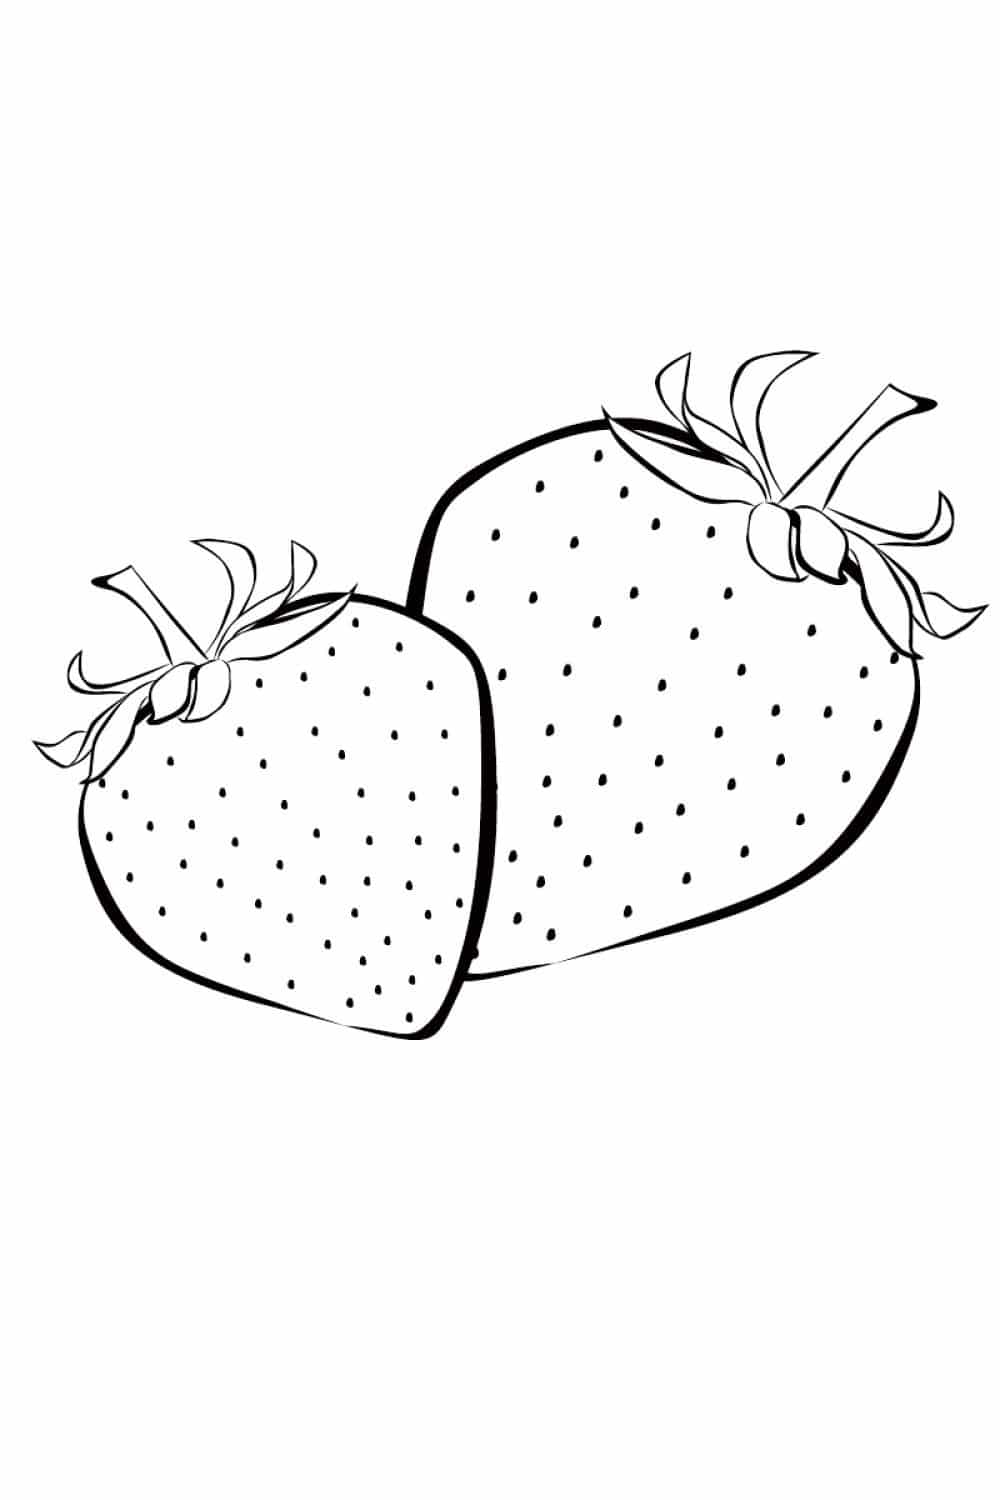 דף צביעה ציור של שני תותים לצביעה